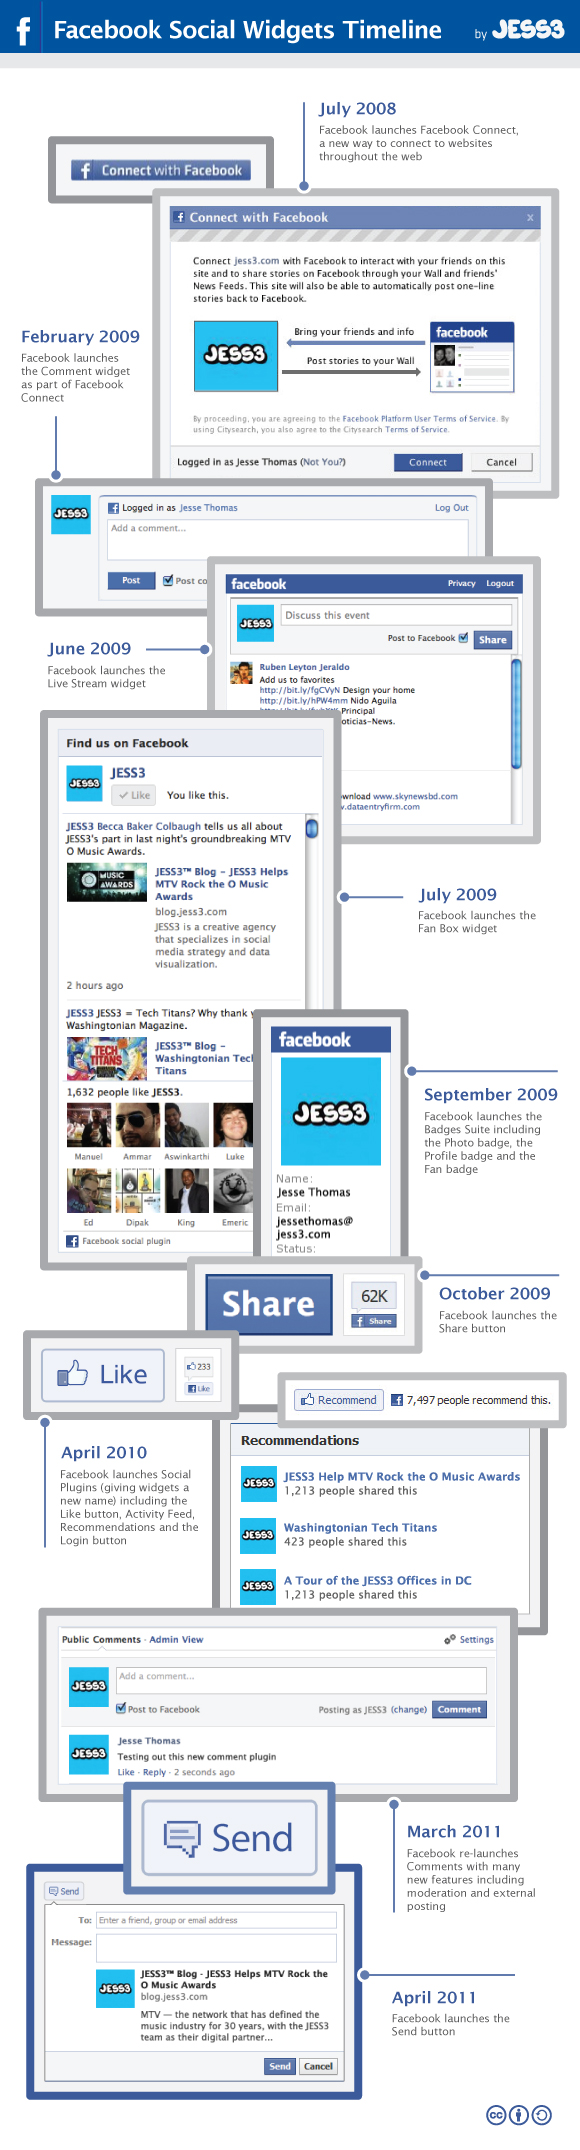 Facebook's Social Widgets Timeline